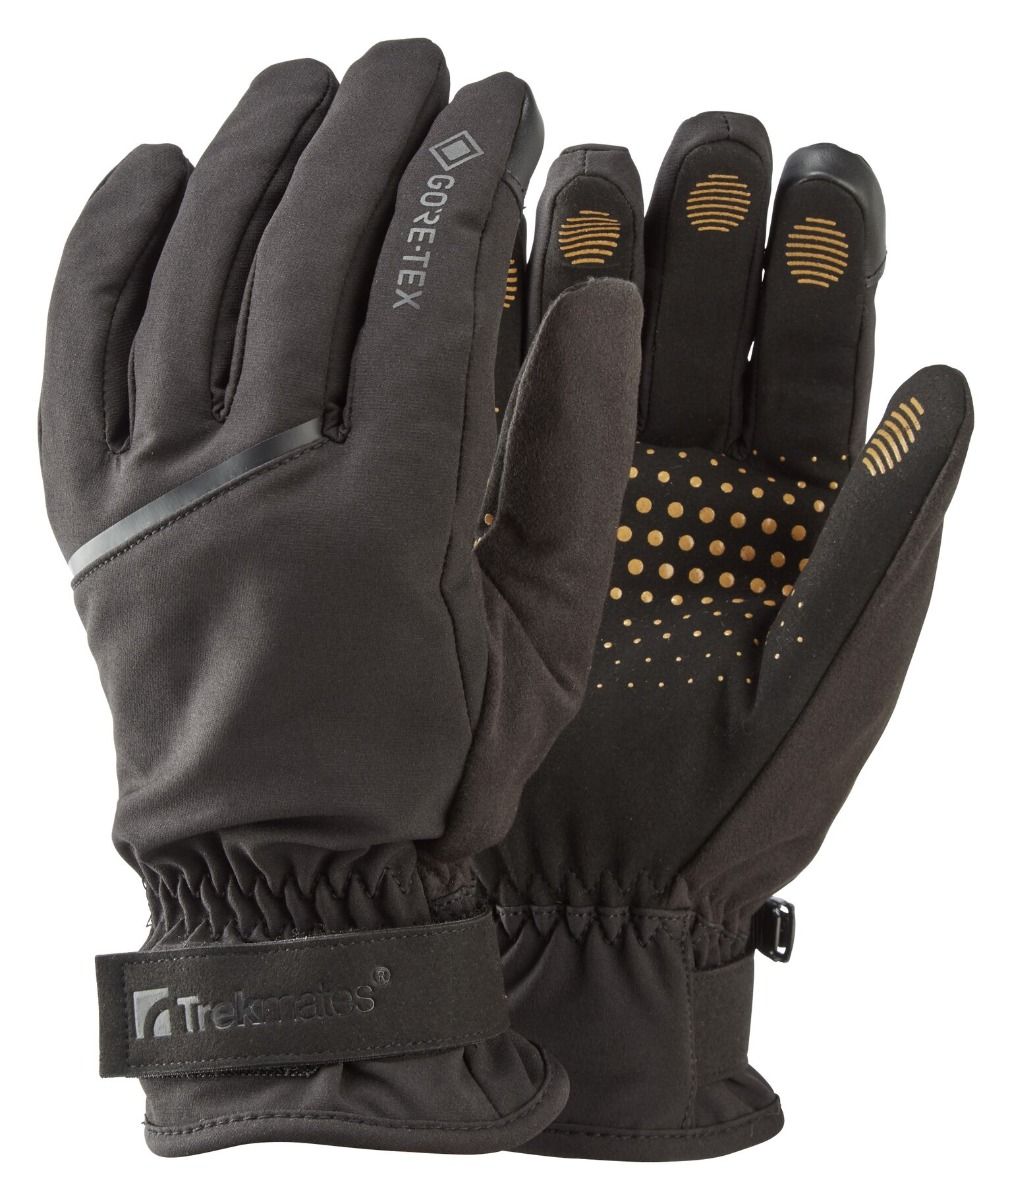 Рукавиці Trekmates Friktion Gore Tex Grip Glove TM 004543 Black, розмір S, чорні фото 